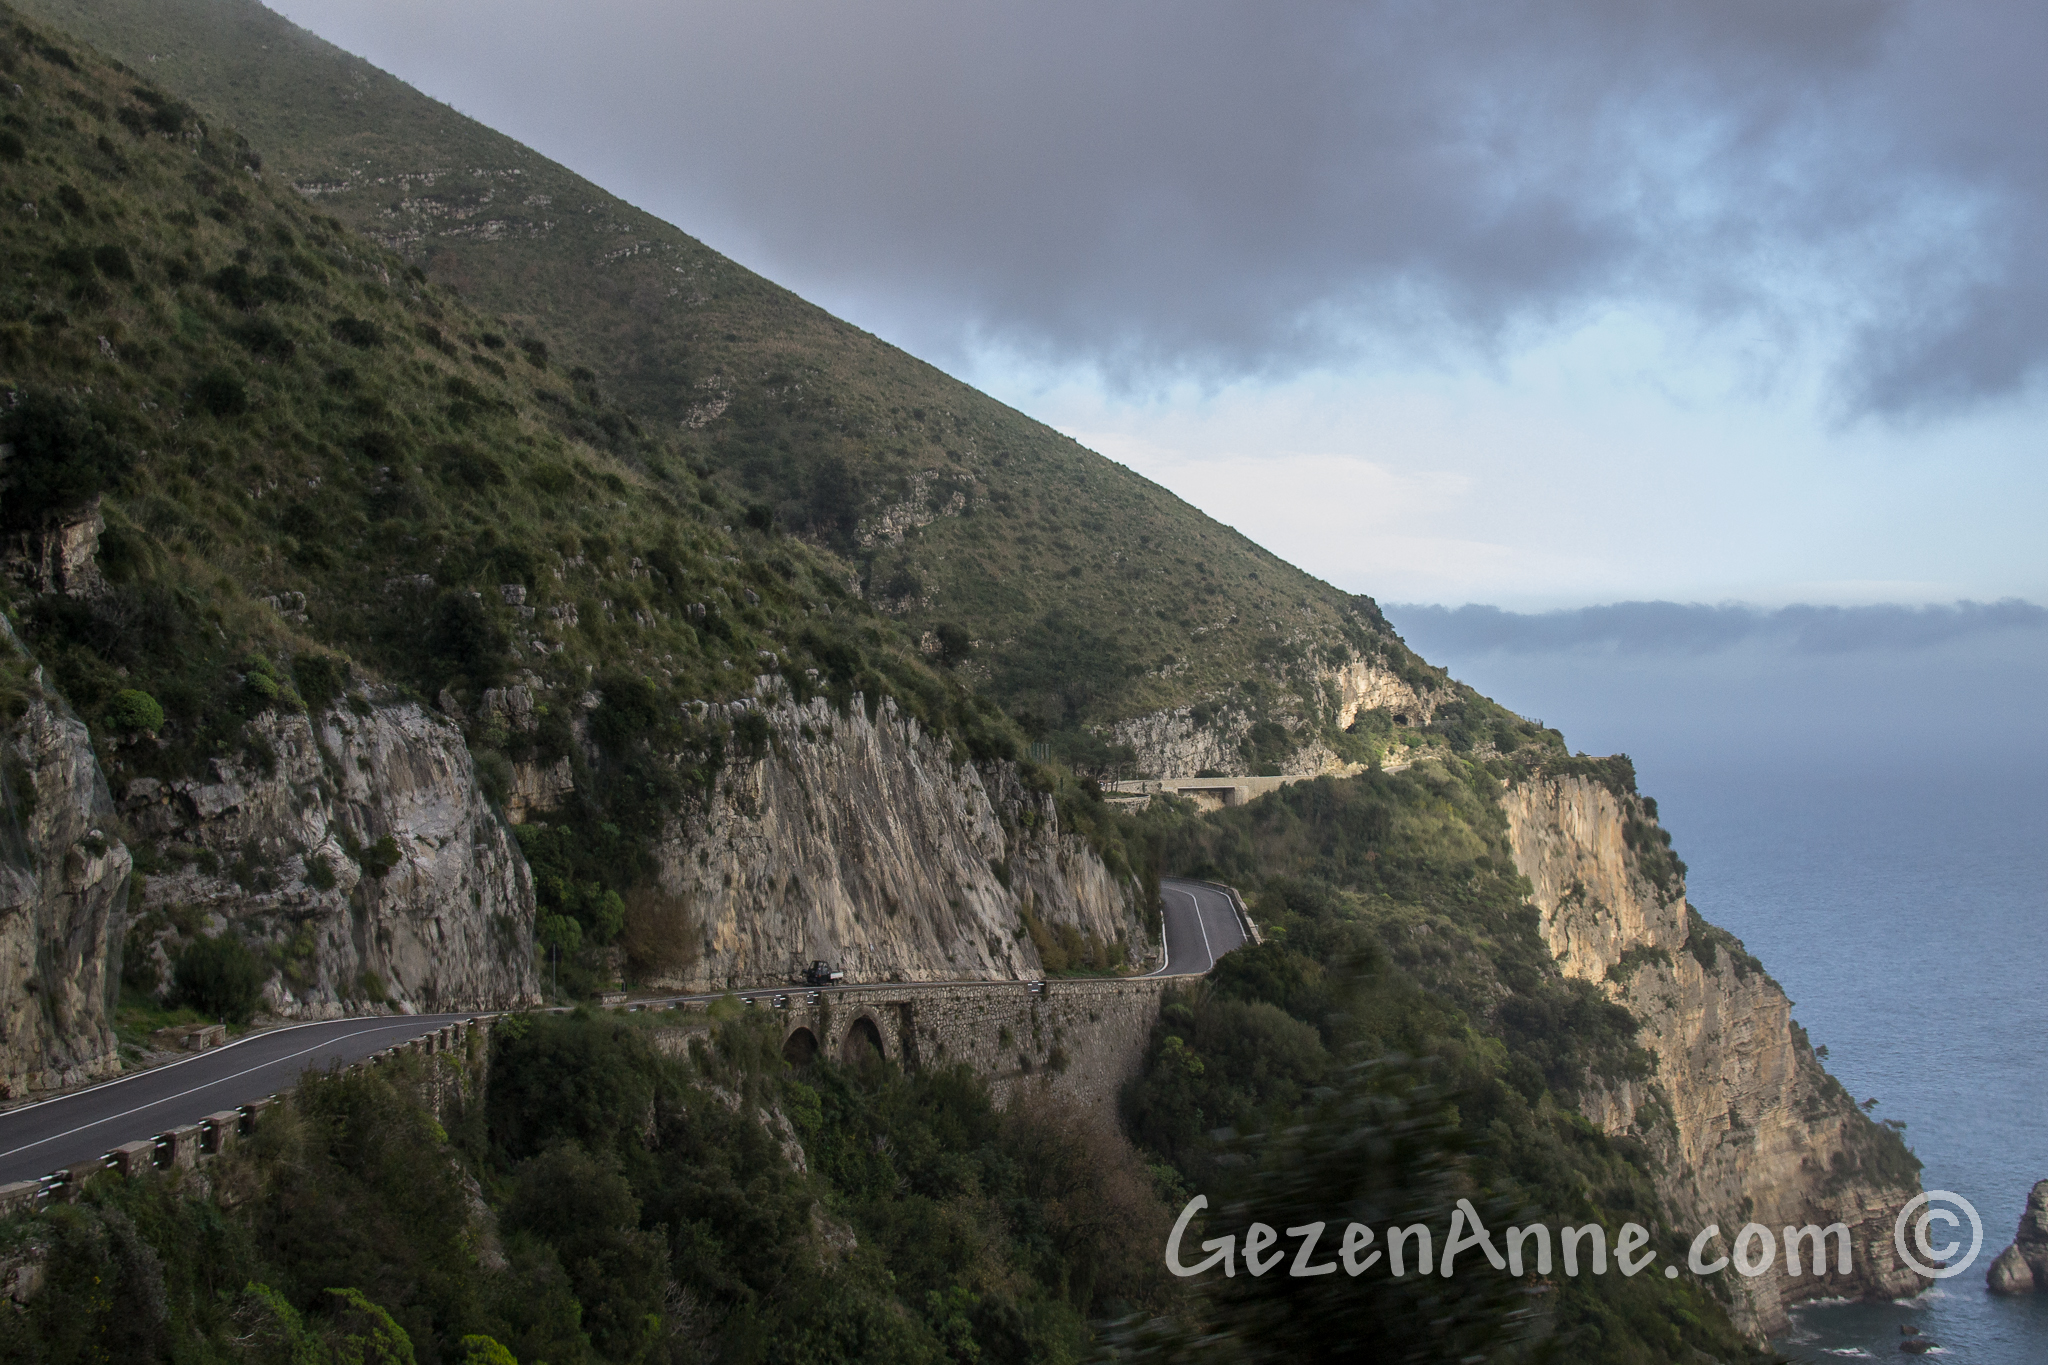 Roads on the Amalfi Coast